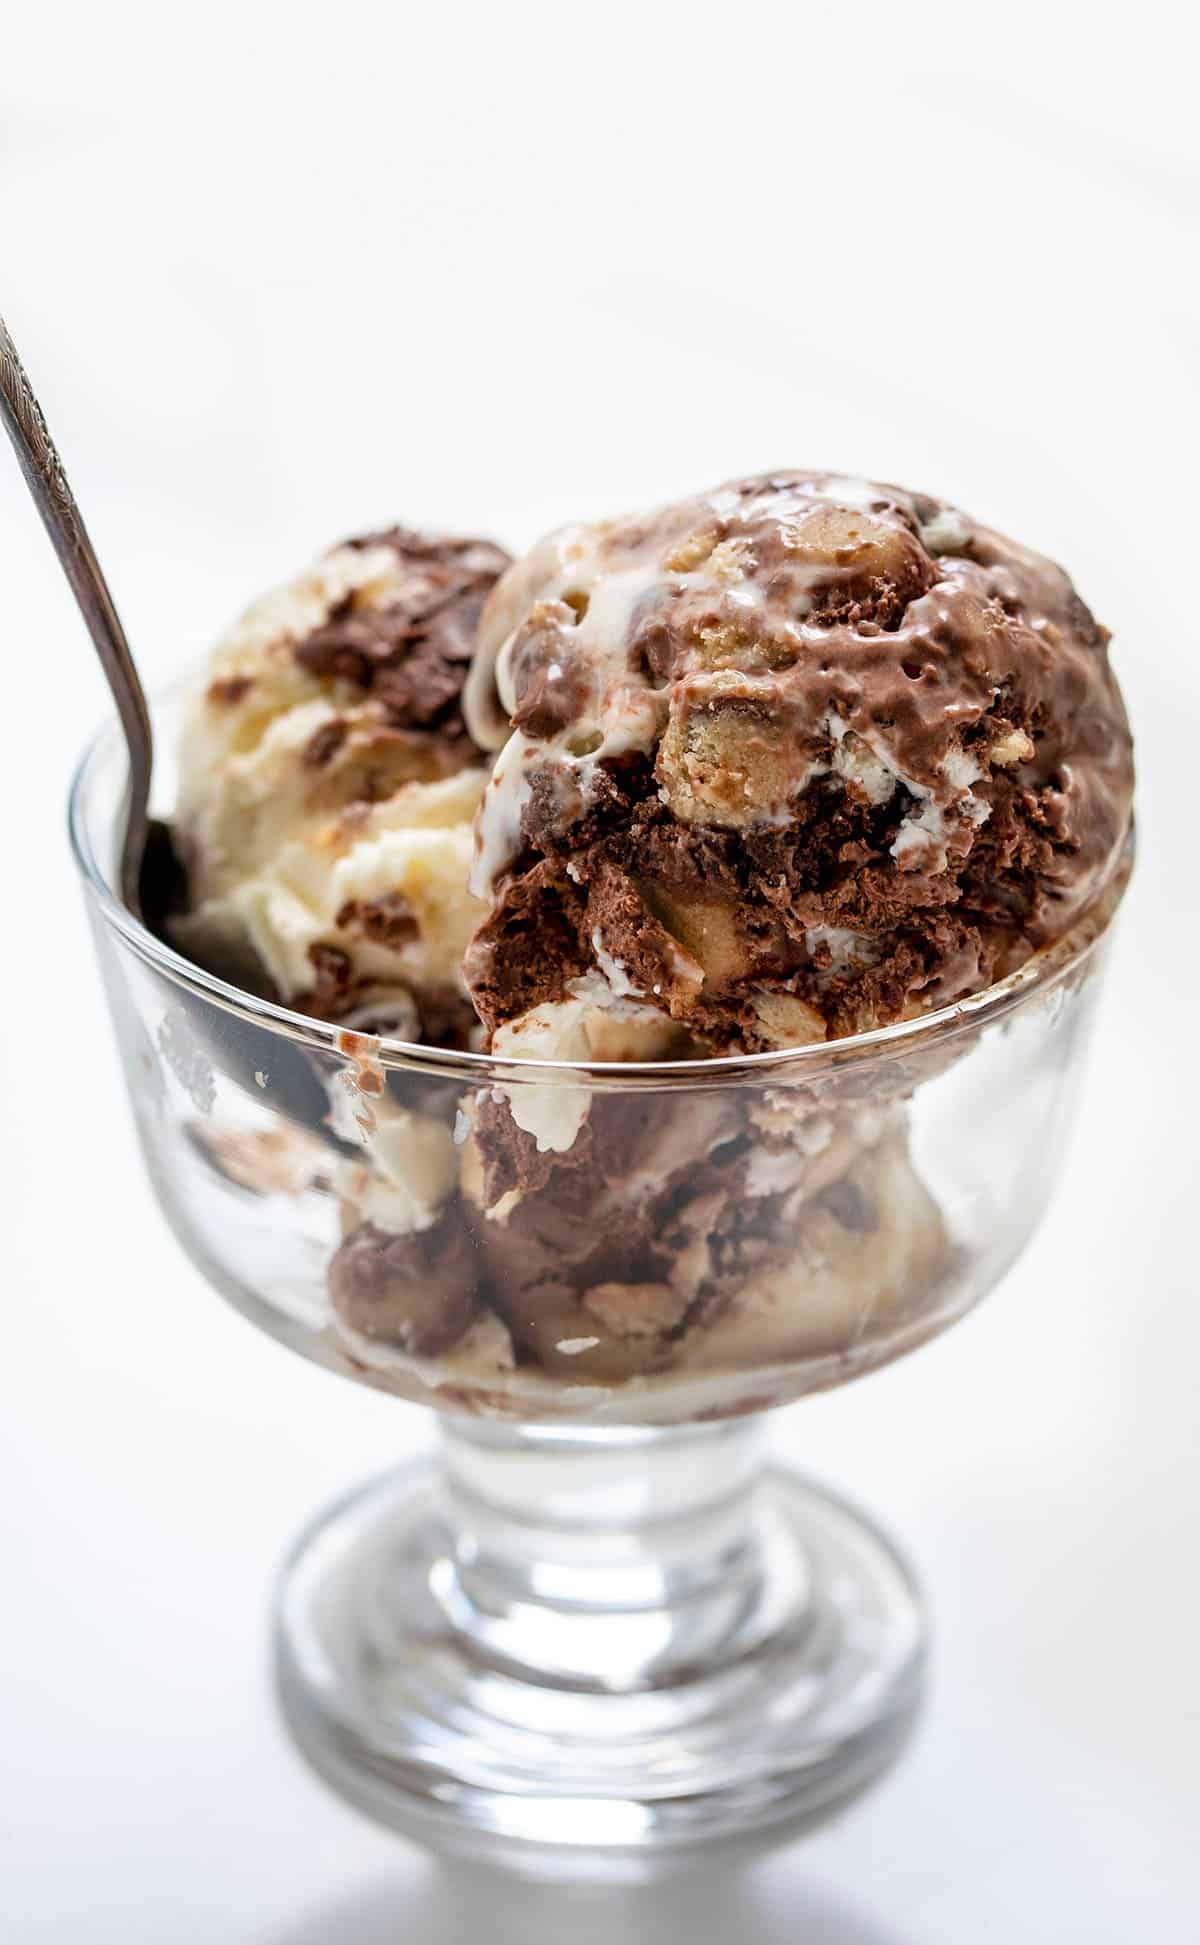 在玻璃碗里放一勺饼干面团布朗尼冰淇淋。